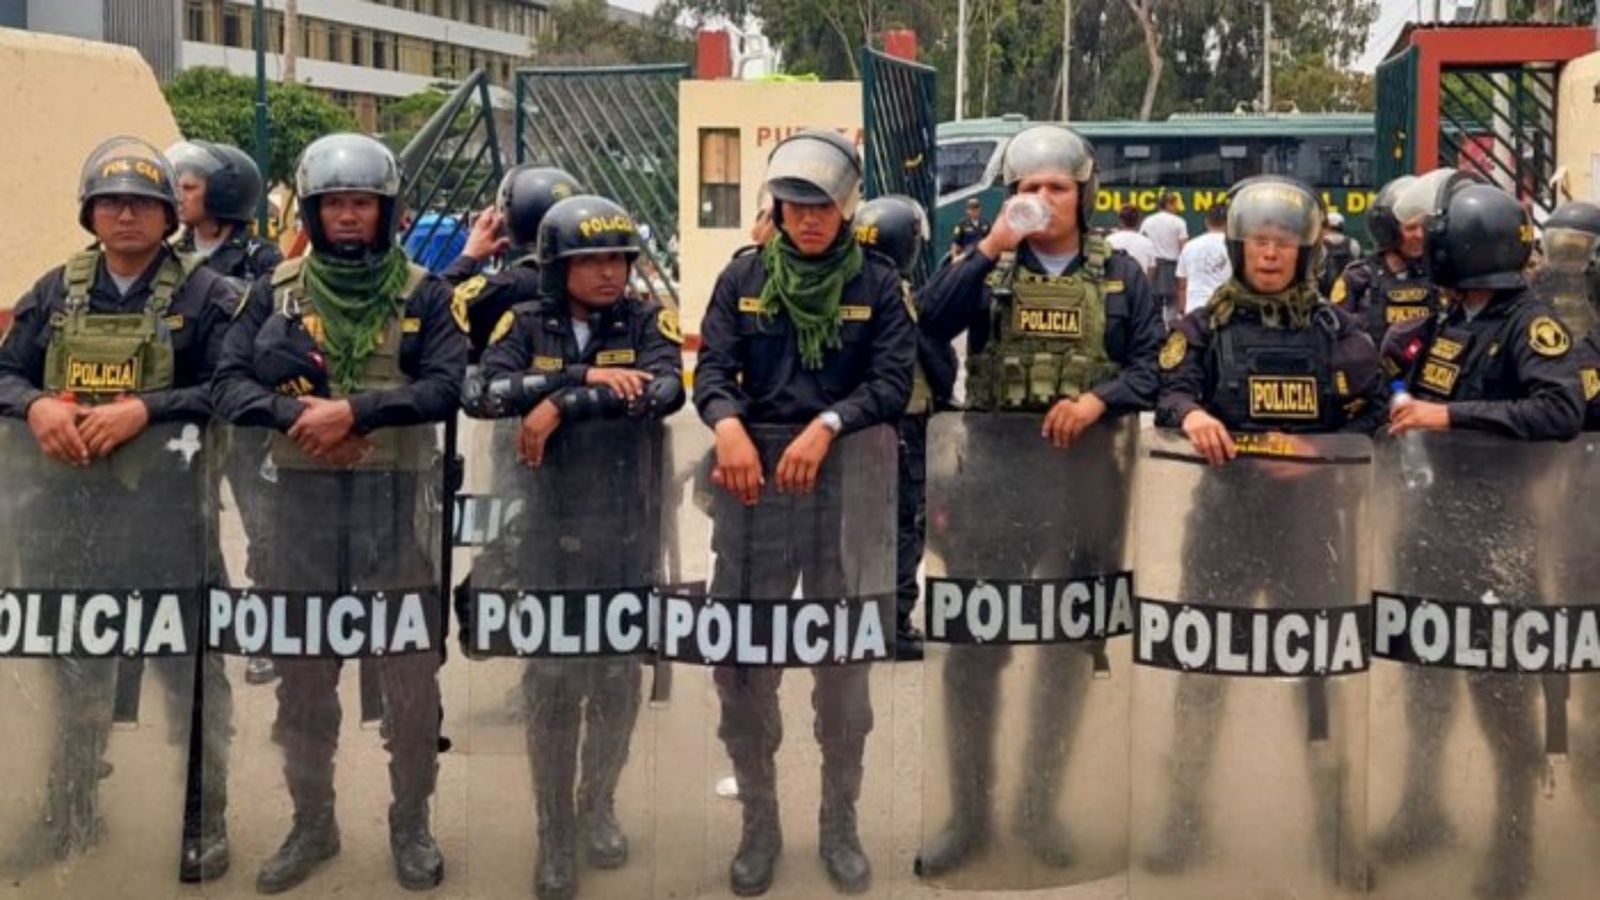 شرطة مكافحة الشغب في حرم جامعة سان ماركوس في ليما في 21 يناير 2023 لمواجهة واعتقال مثيري الشغب المختبئين في المبنى